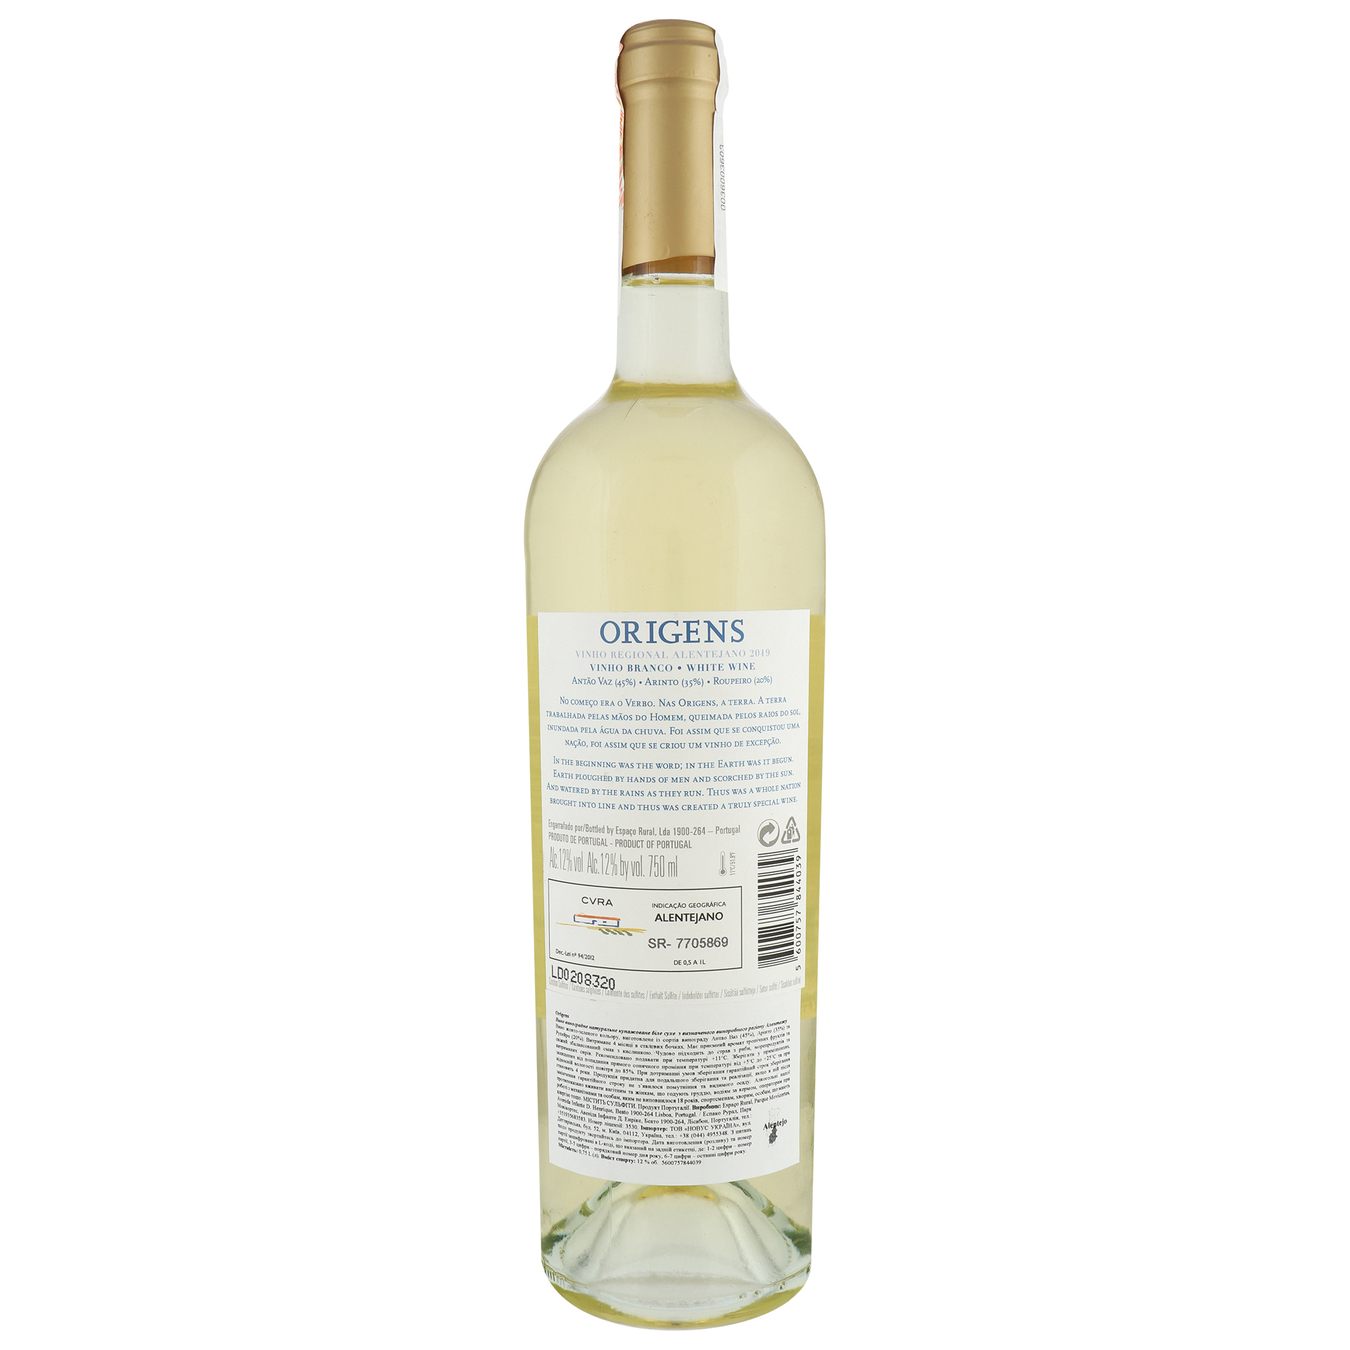 Origens White Alentejano white dry wine 12,5% 0,75l 2